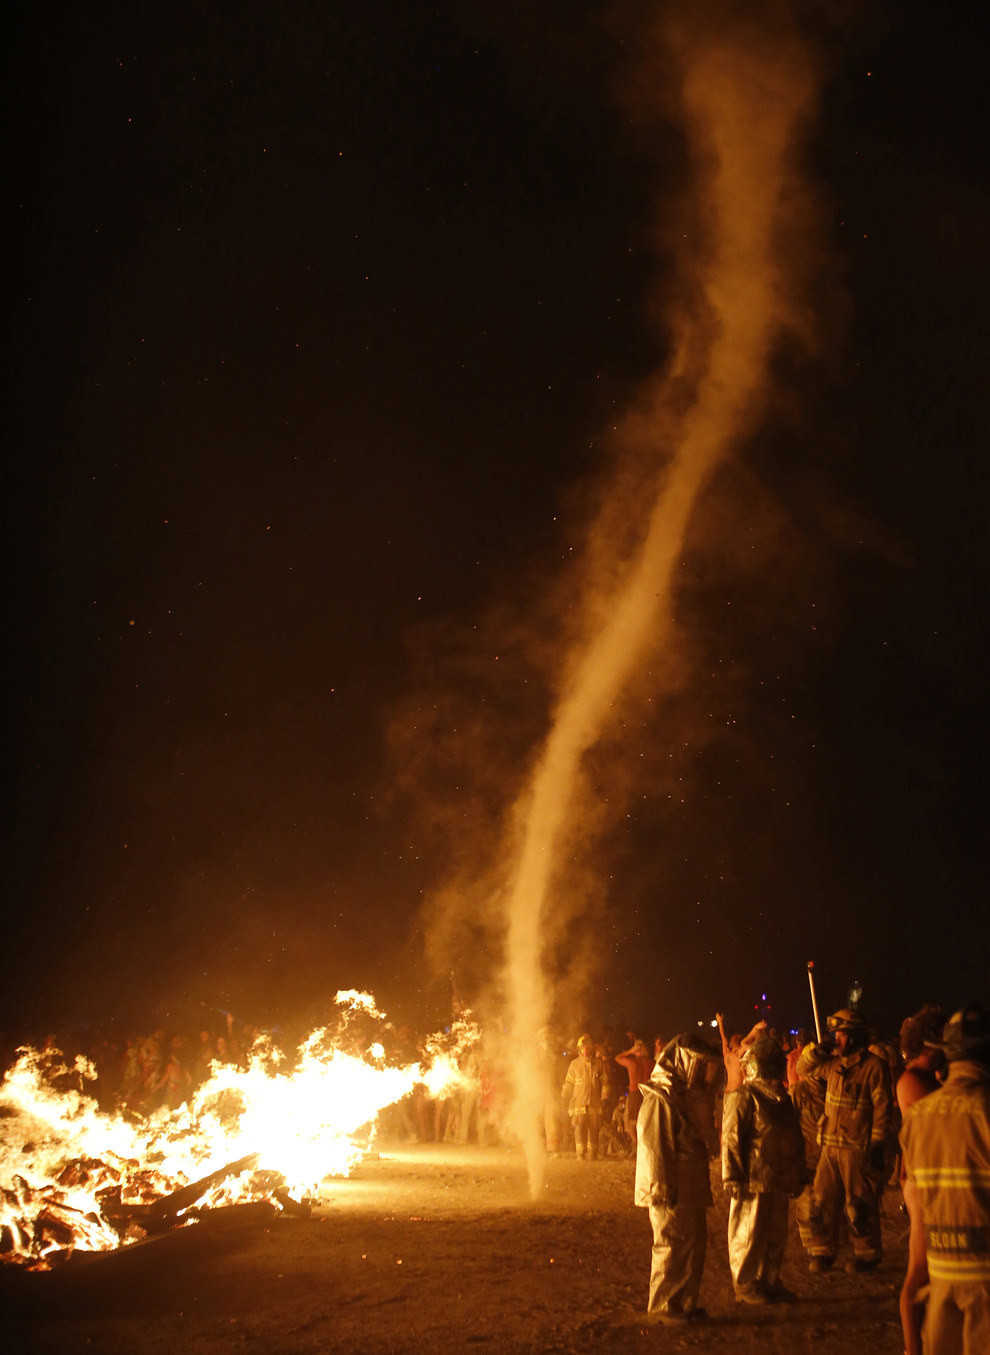 25      Burning Man burning man, 